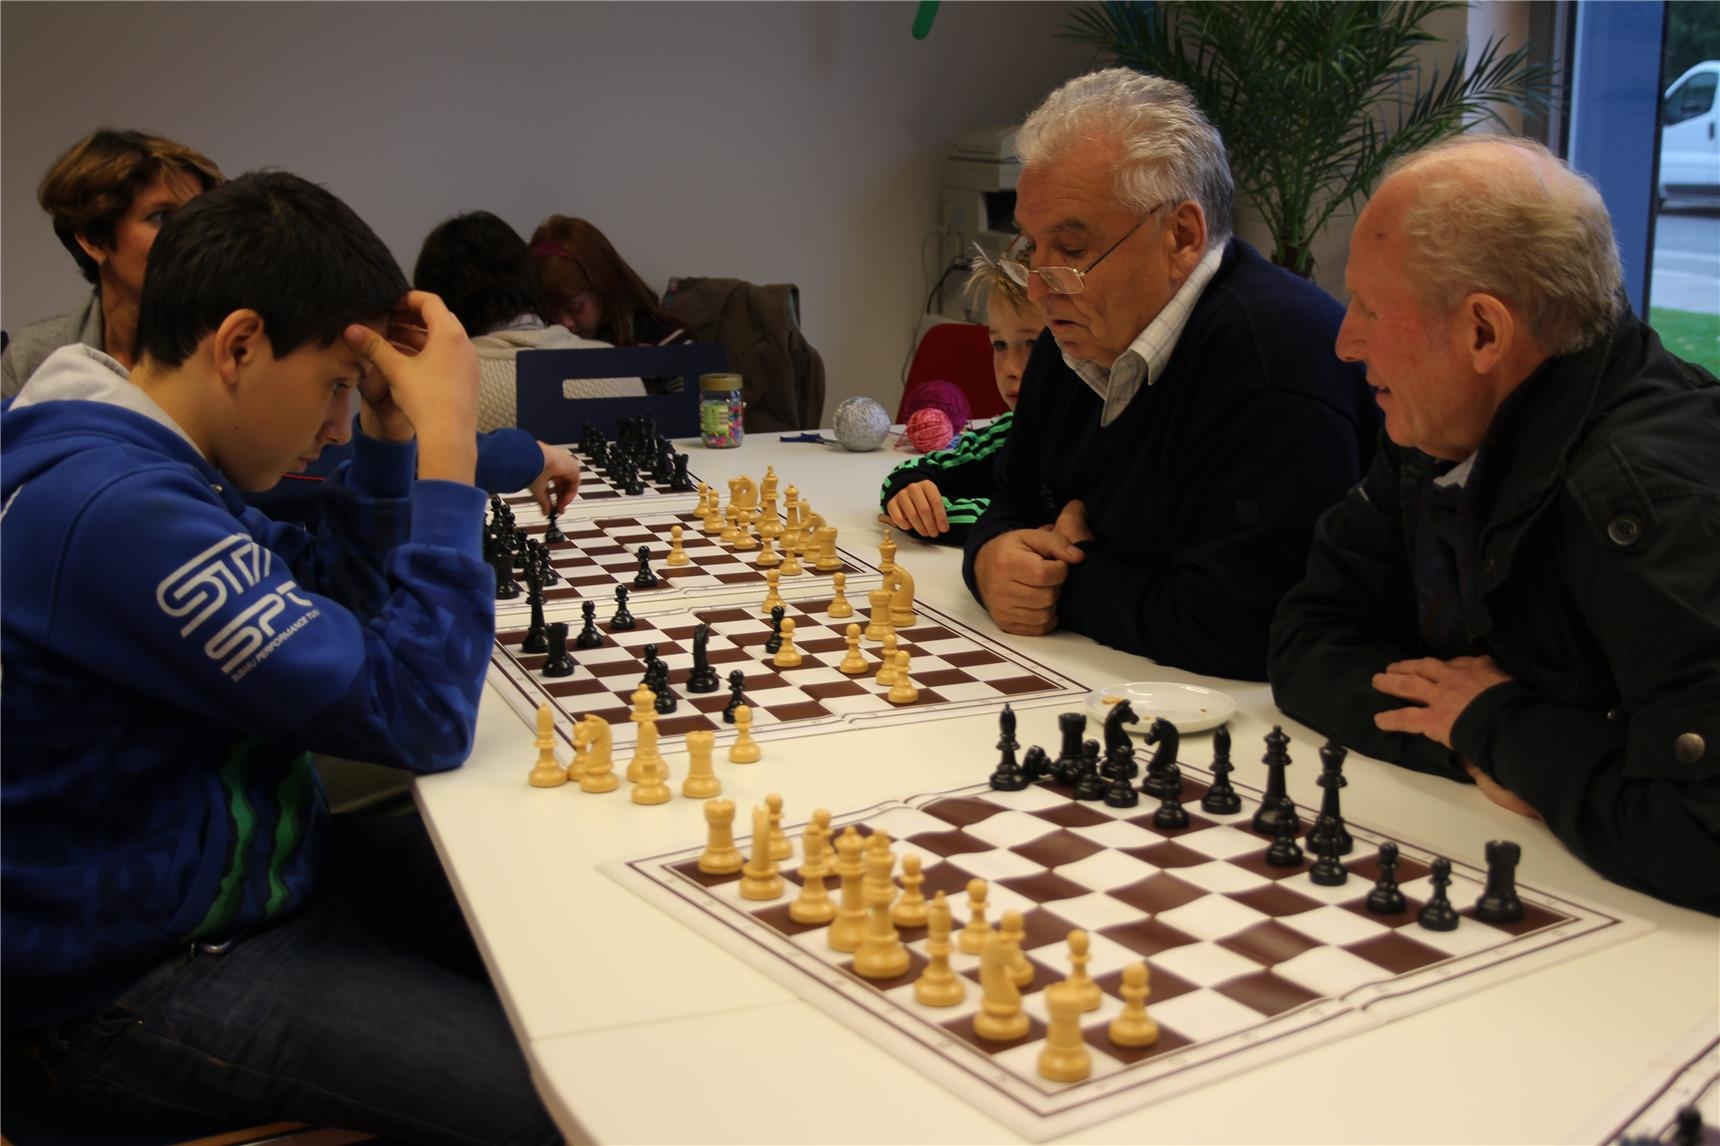 Schachspiel im Jugend- und Stadtteilhaus Schicksbaum innen, auf einem Tisch sind mehrere Schachbretter aufgestellt, zwei ältere Männer spielen gegen Kinder 